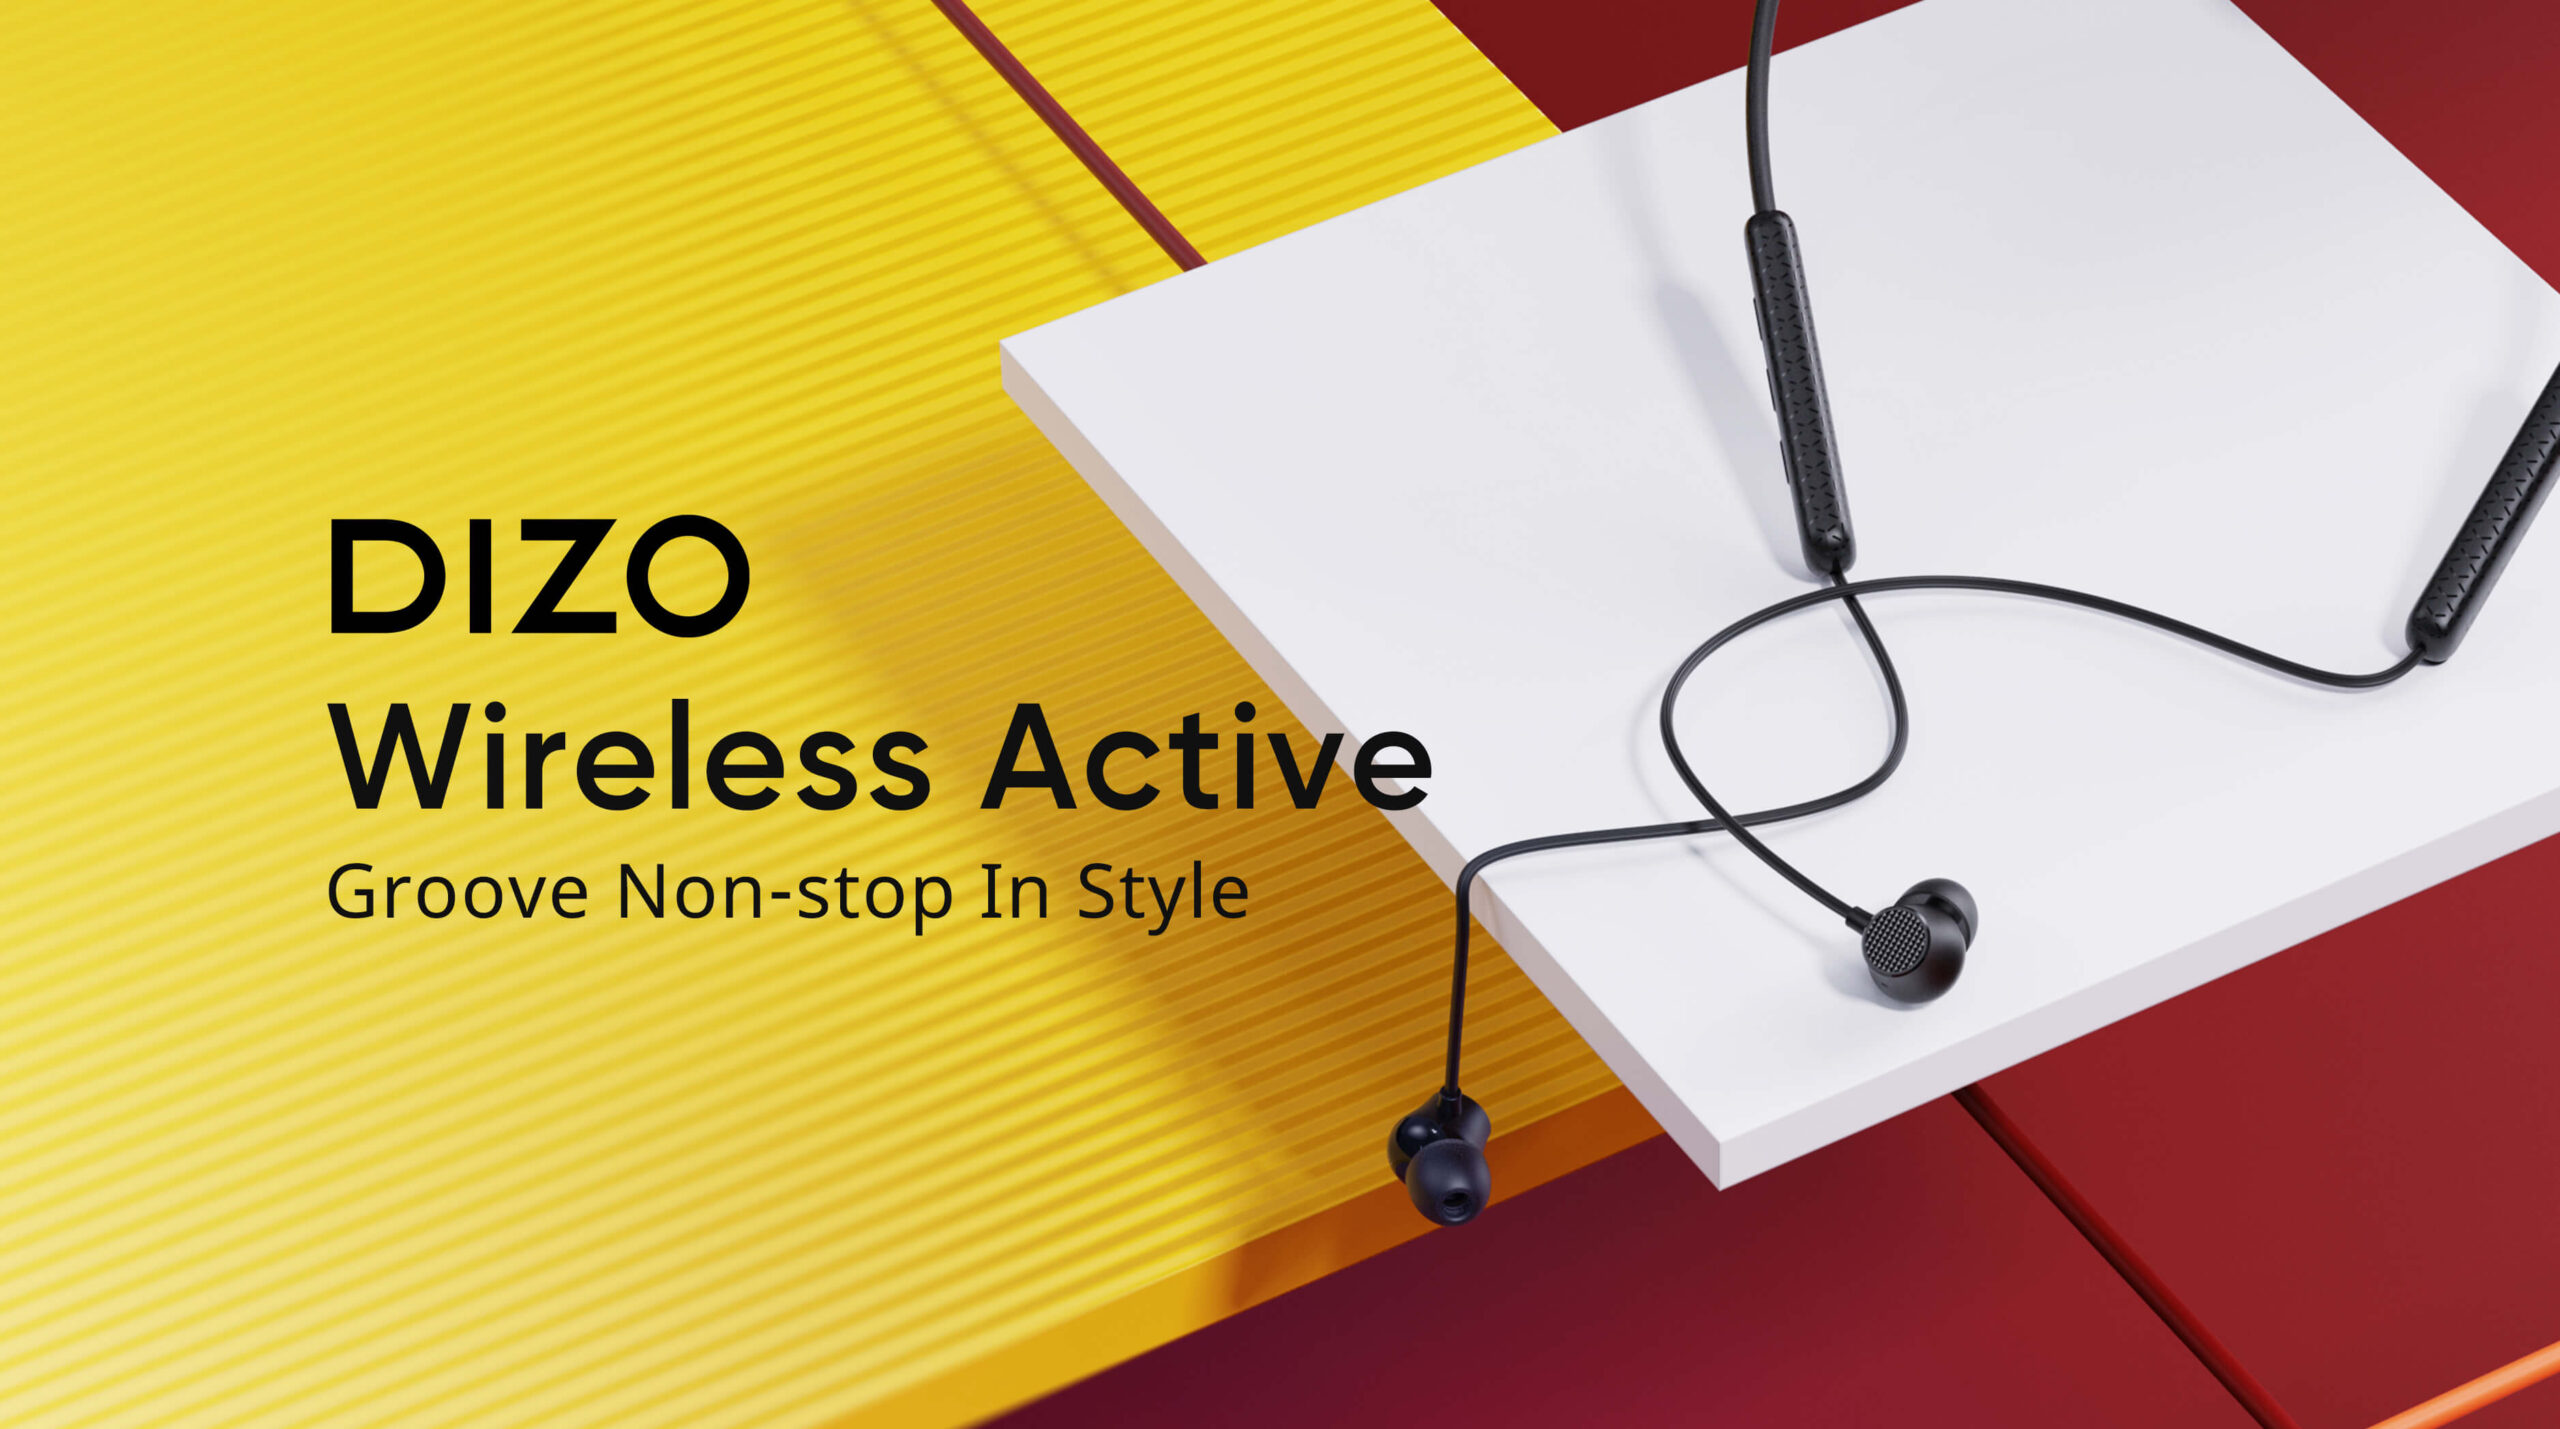 DIZO Wireless Active